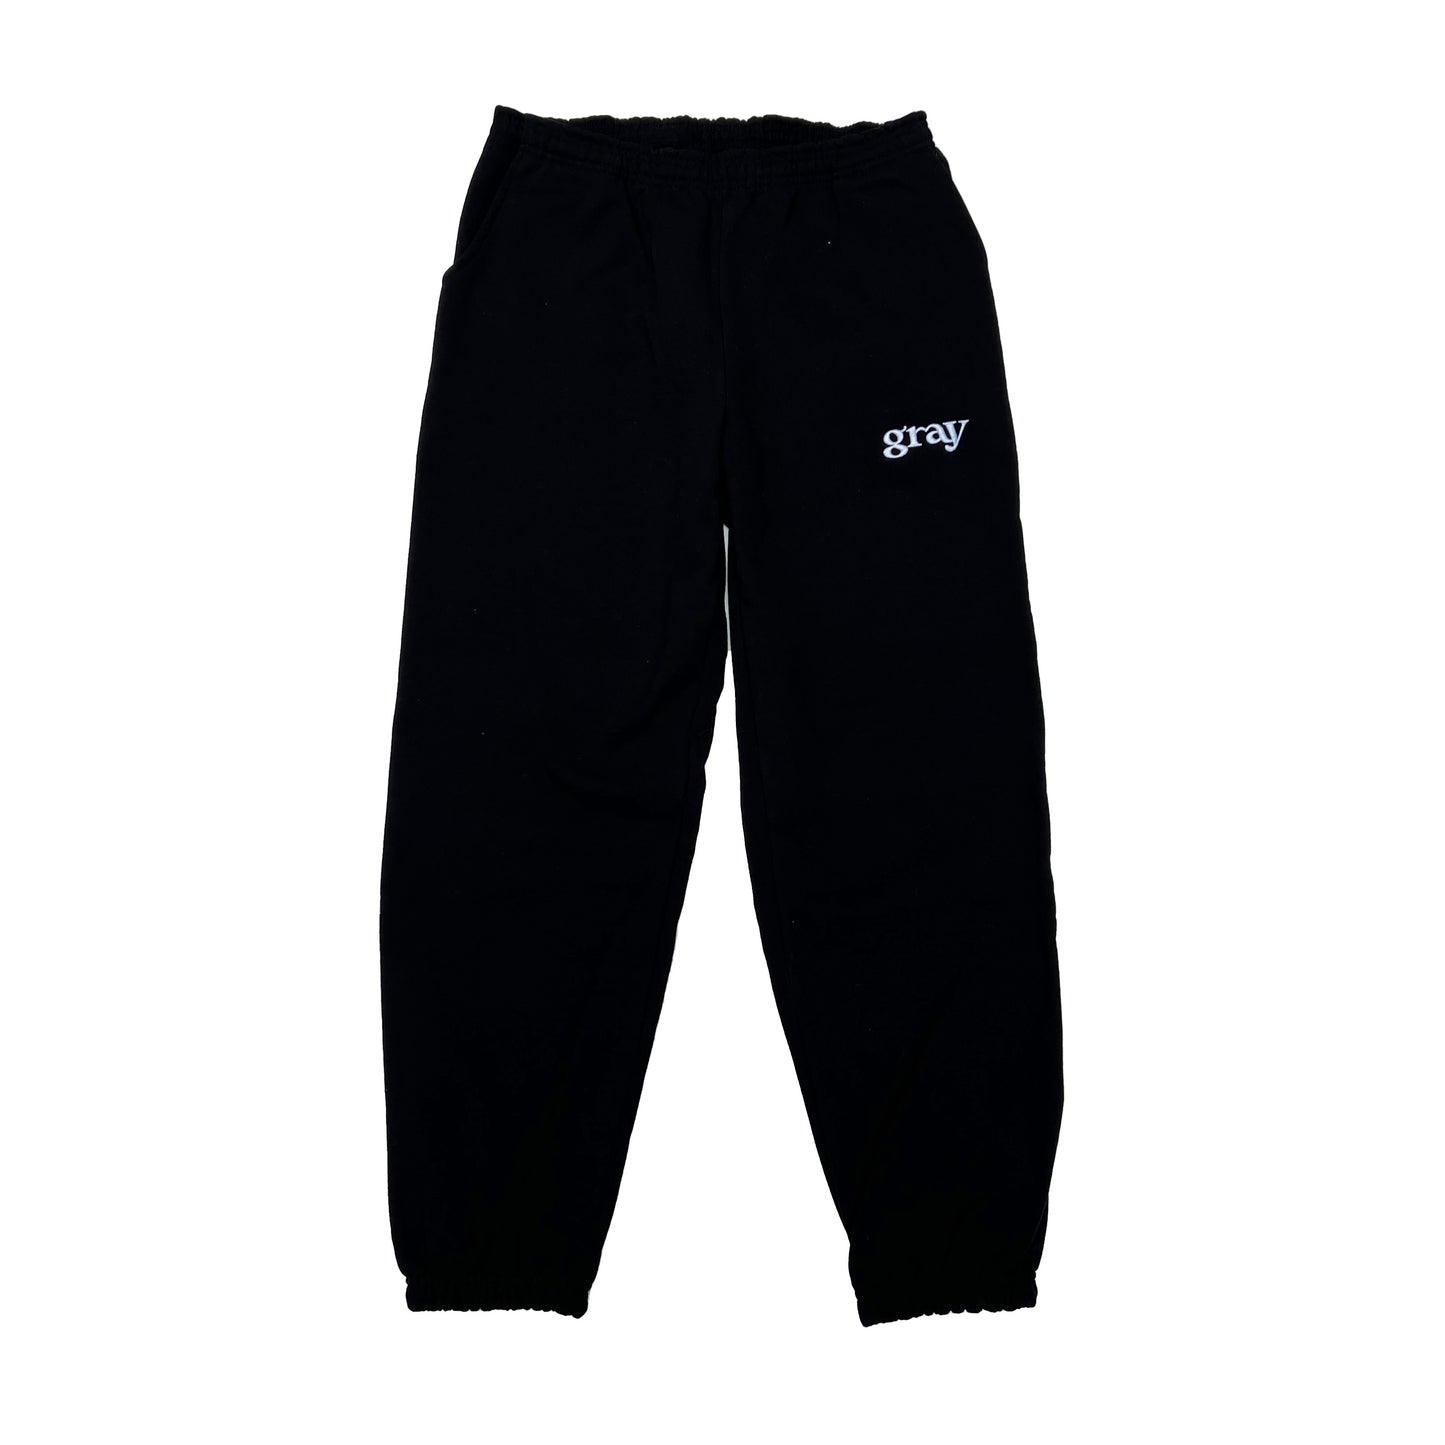 【数量限定受注】gray shop logo sweat pants made in USA【1〜4週間程度でお届け】